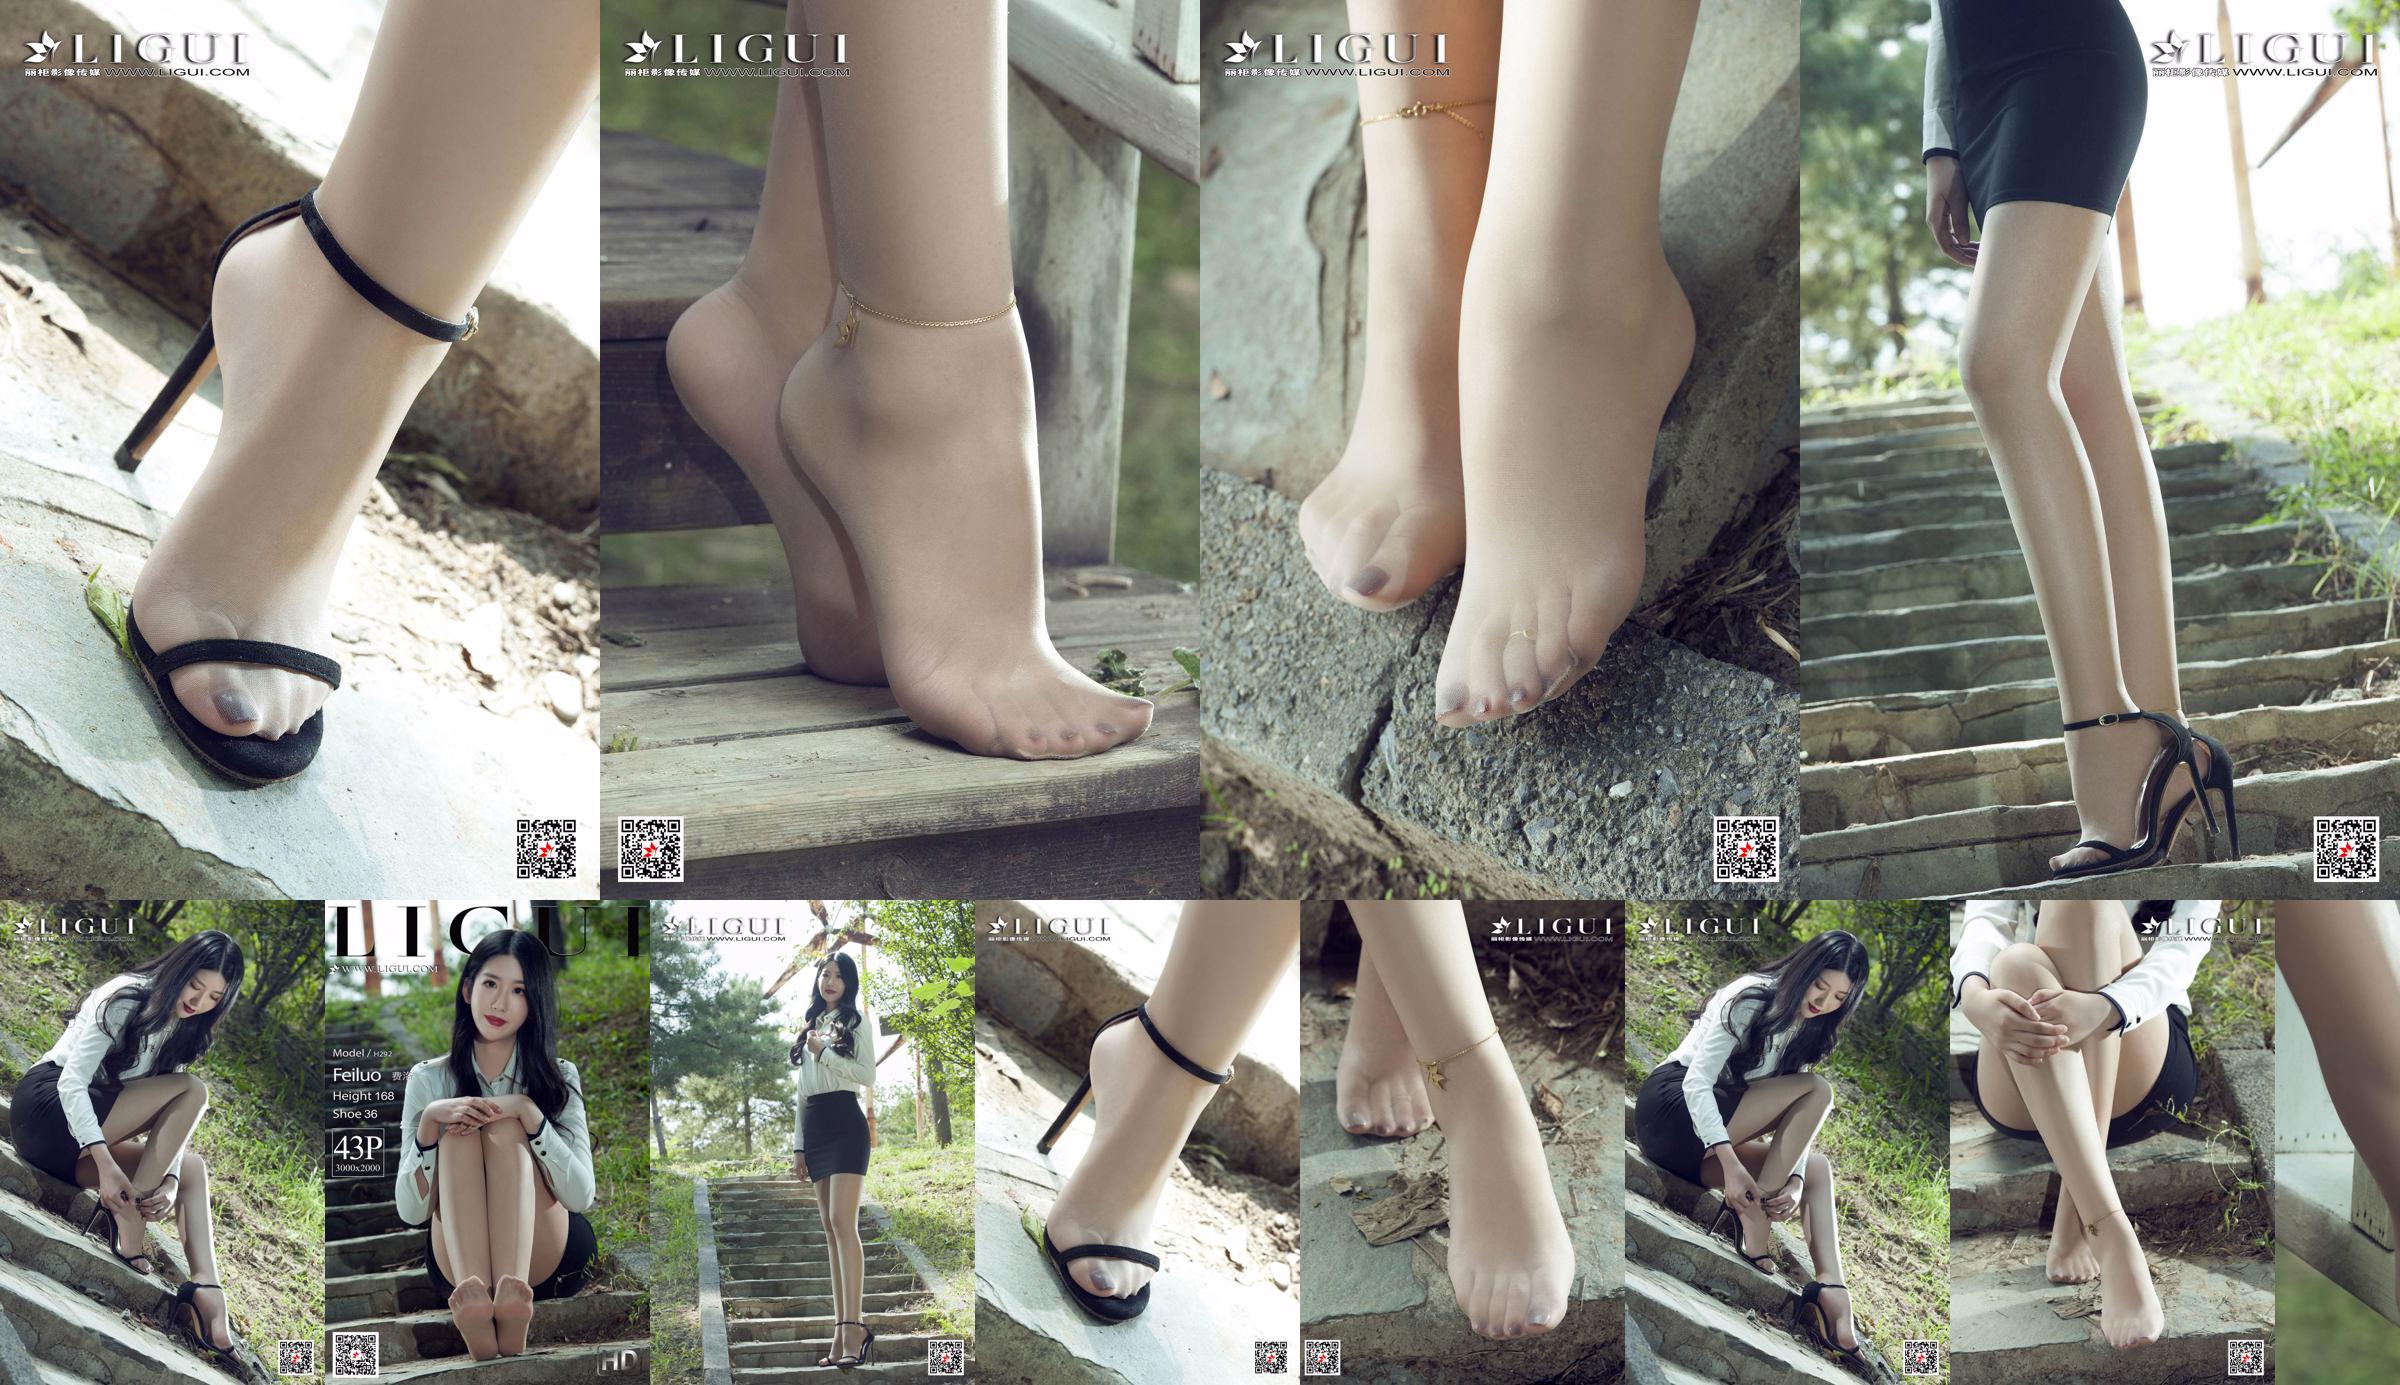 นางแบบ Fei Luo "The Best Legs in Stockings" [Ligui Ligui] No.4c23d4 หน้า 1